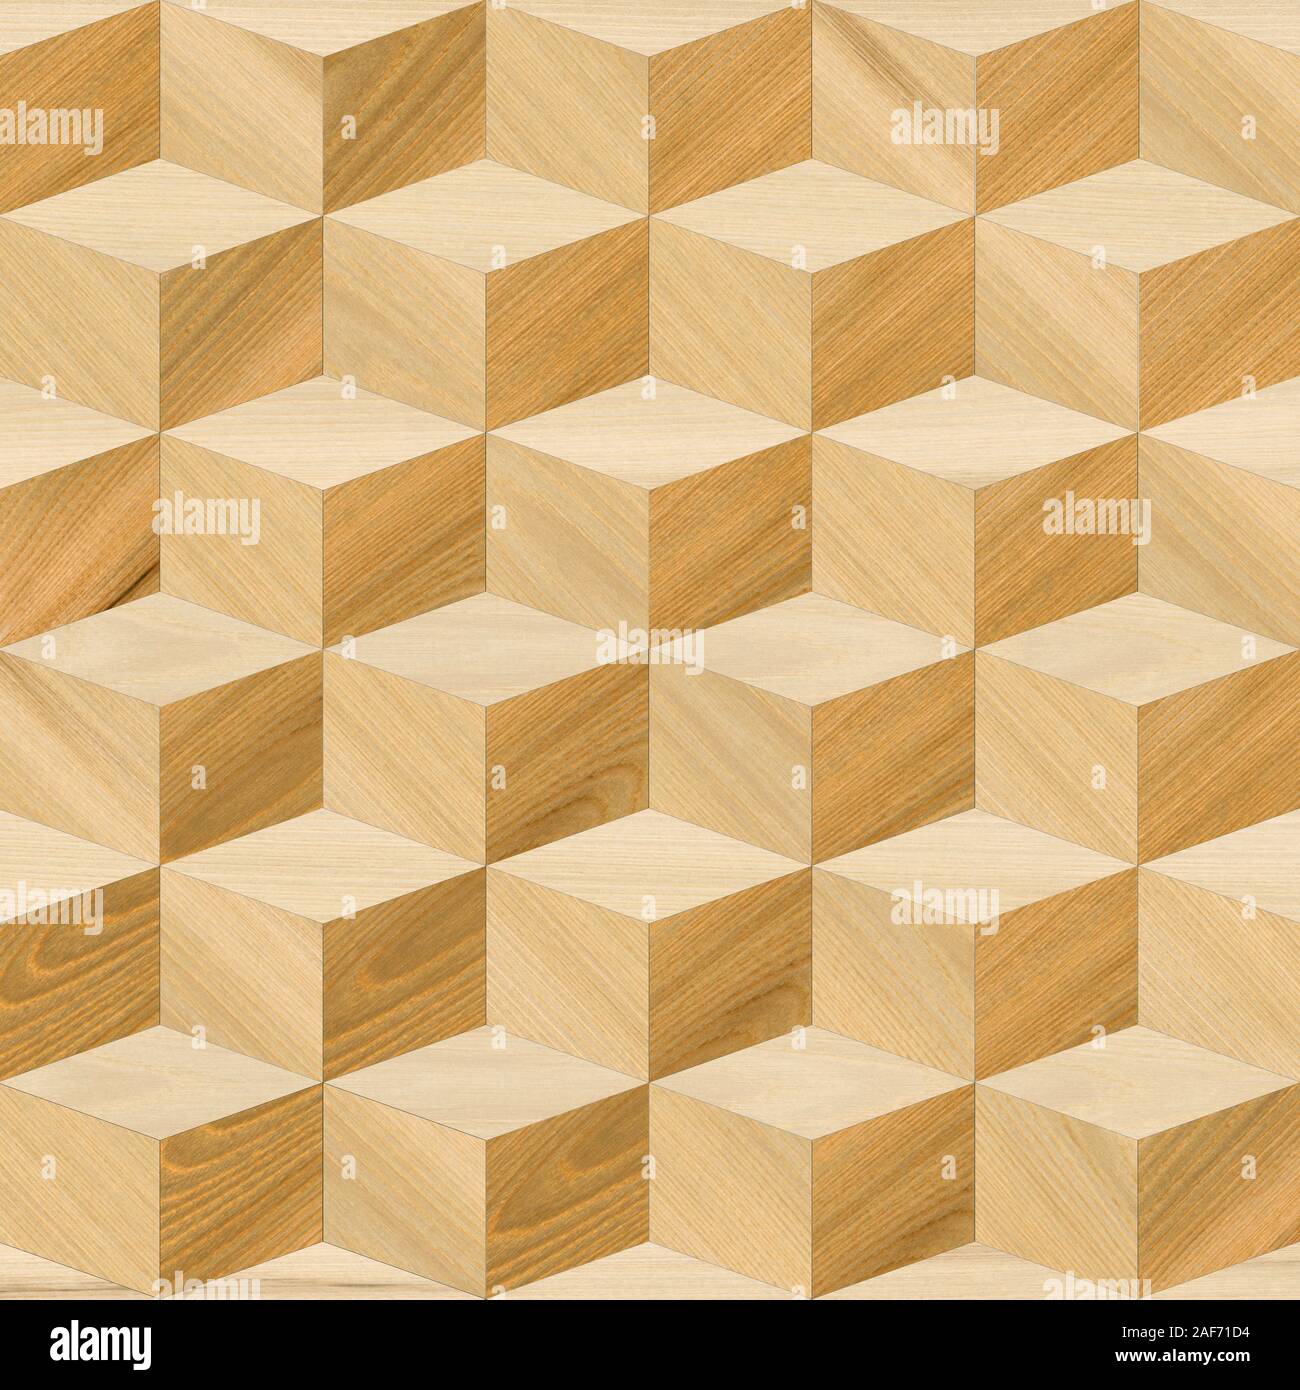 Sở hữu một mẫu thiết kế gỗ đa giác hay nền gỗ đẹp thật sự là điều đáng chúc phúc. Hình ảnh các mẫu thiết kế này sẽ khiến bạn trầm trồ bởi vẻ đẹp hiện đại và độc đáo của chúng. Hãy xem hình ảnh để tìm hiểu thêm về những mẫu thiết kế gỗ đẹp và sang trọng trong nội thất. 